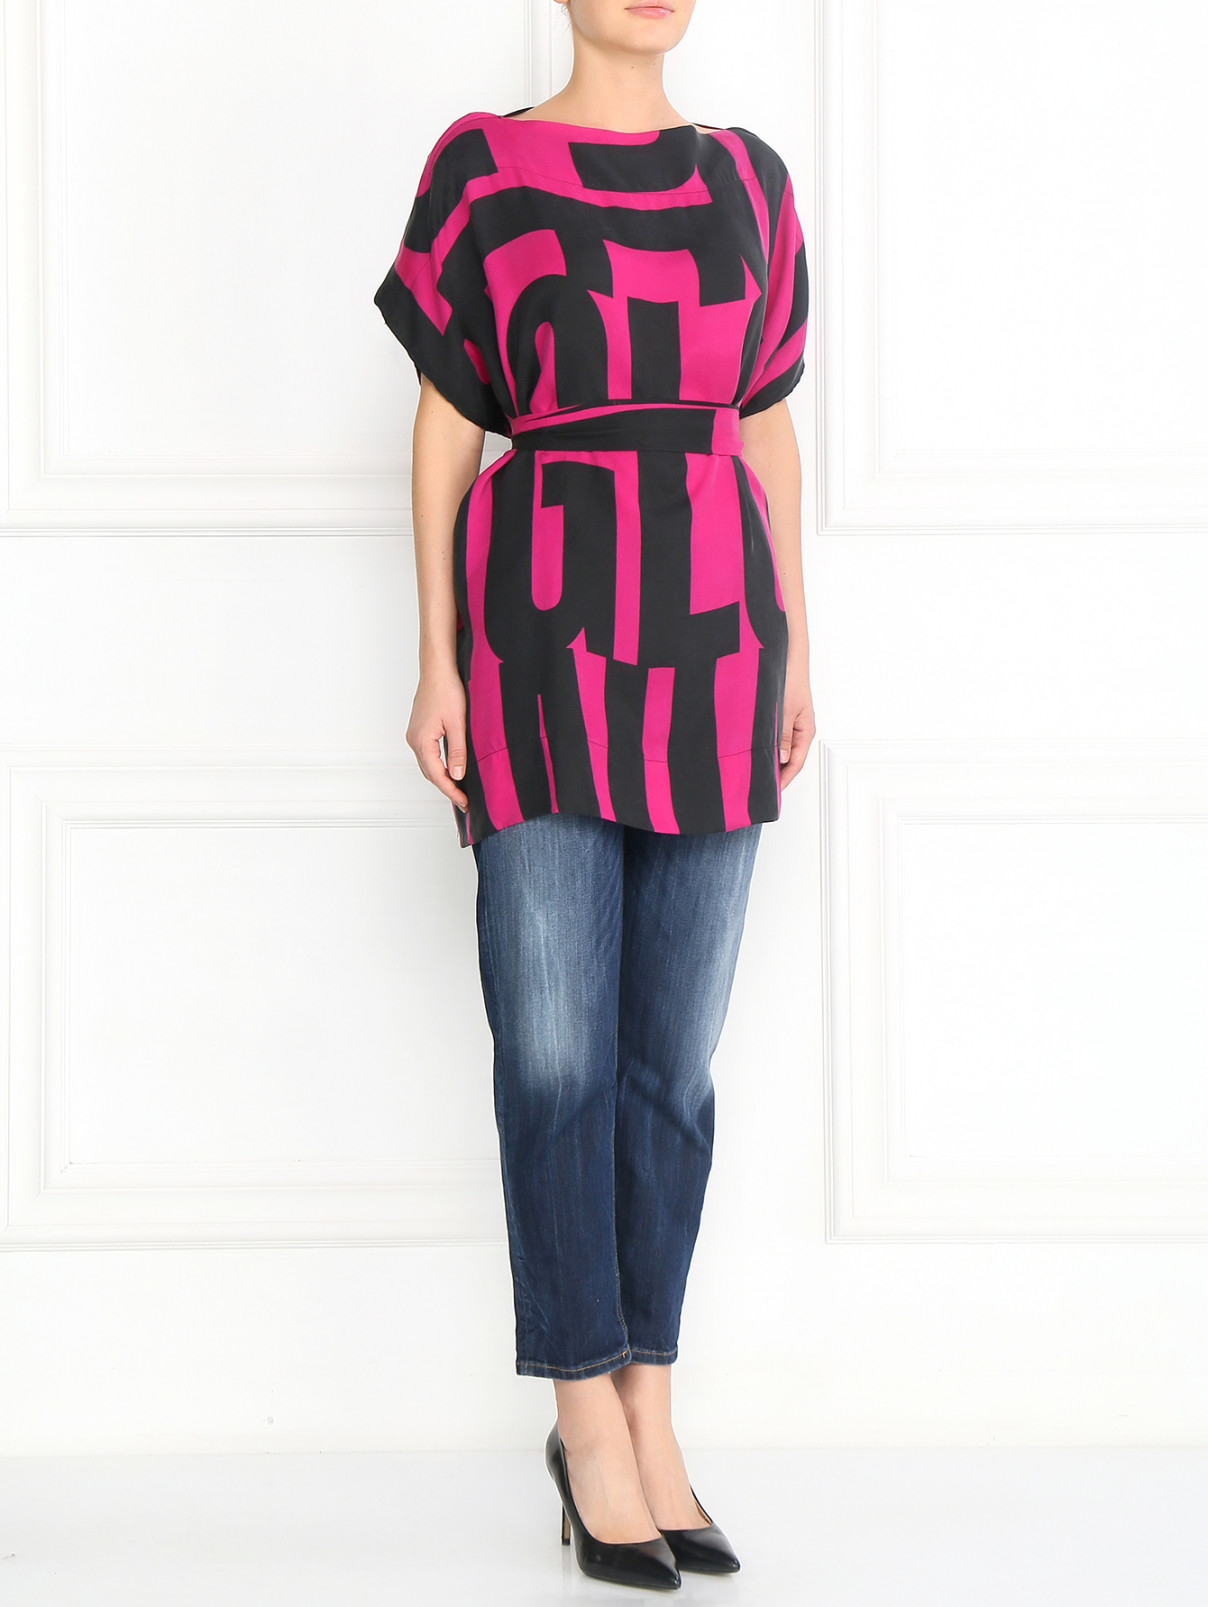 Блуза свободного фасона с узором "полоска" Anglomania by V.Westwood  –  Модель Общий вид  – Цвет:  Узор